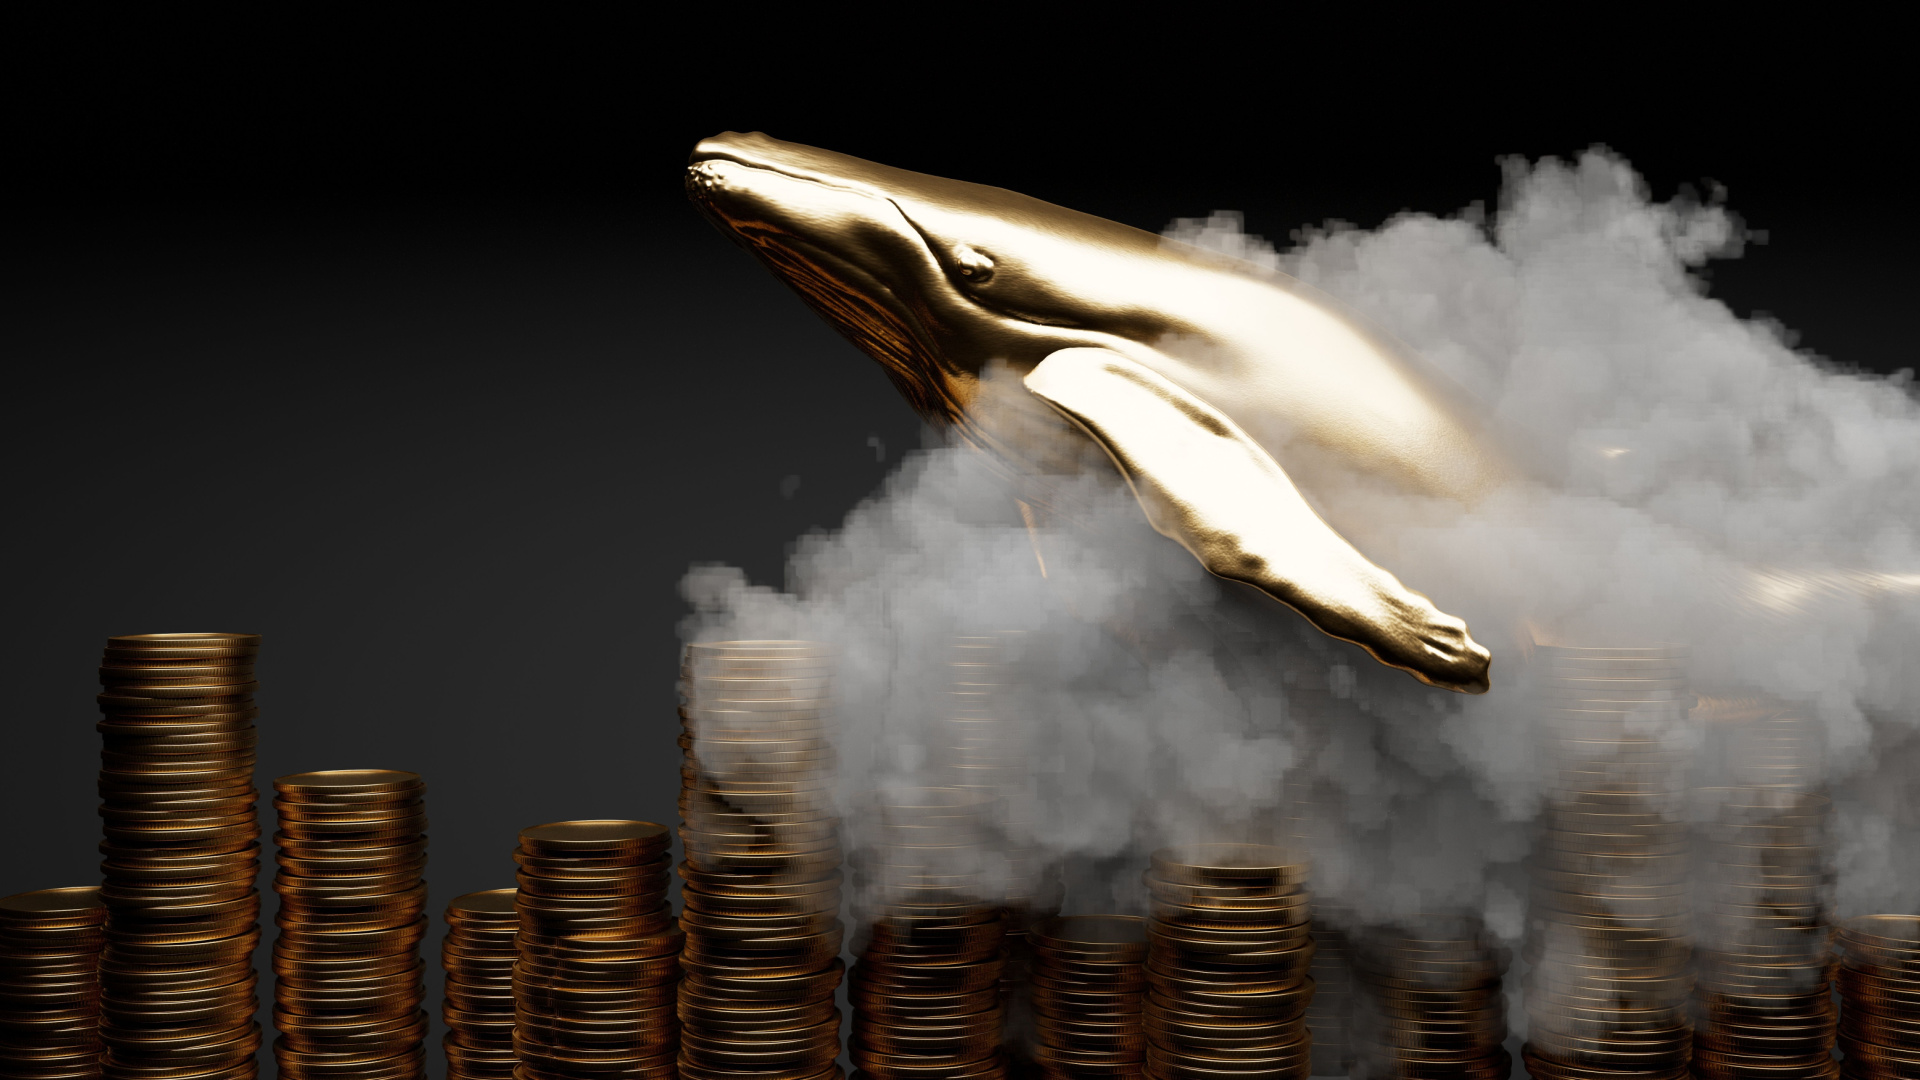 Des baleines achètent de nouveau en masse des bitcoins